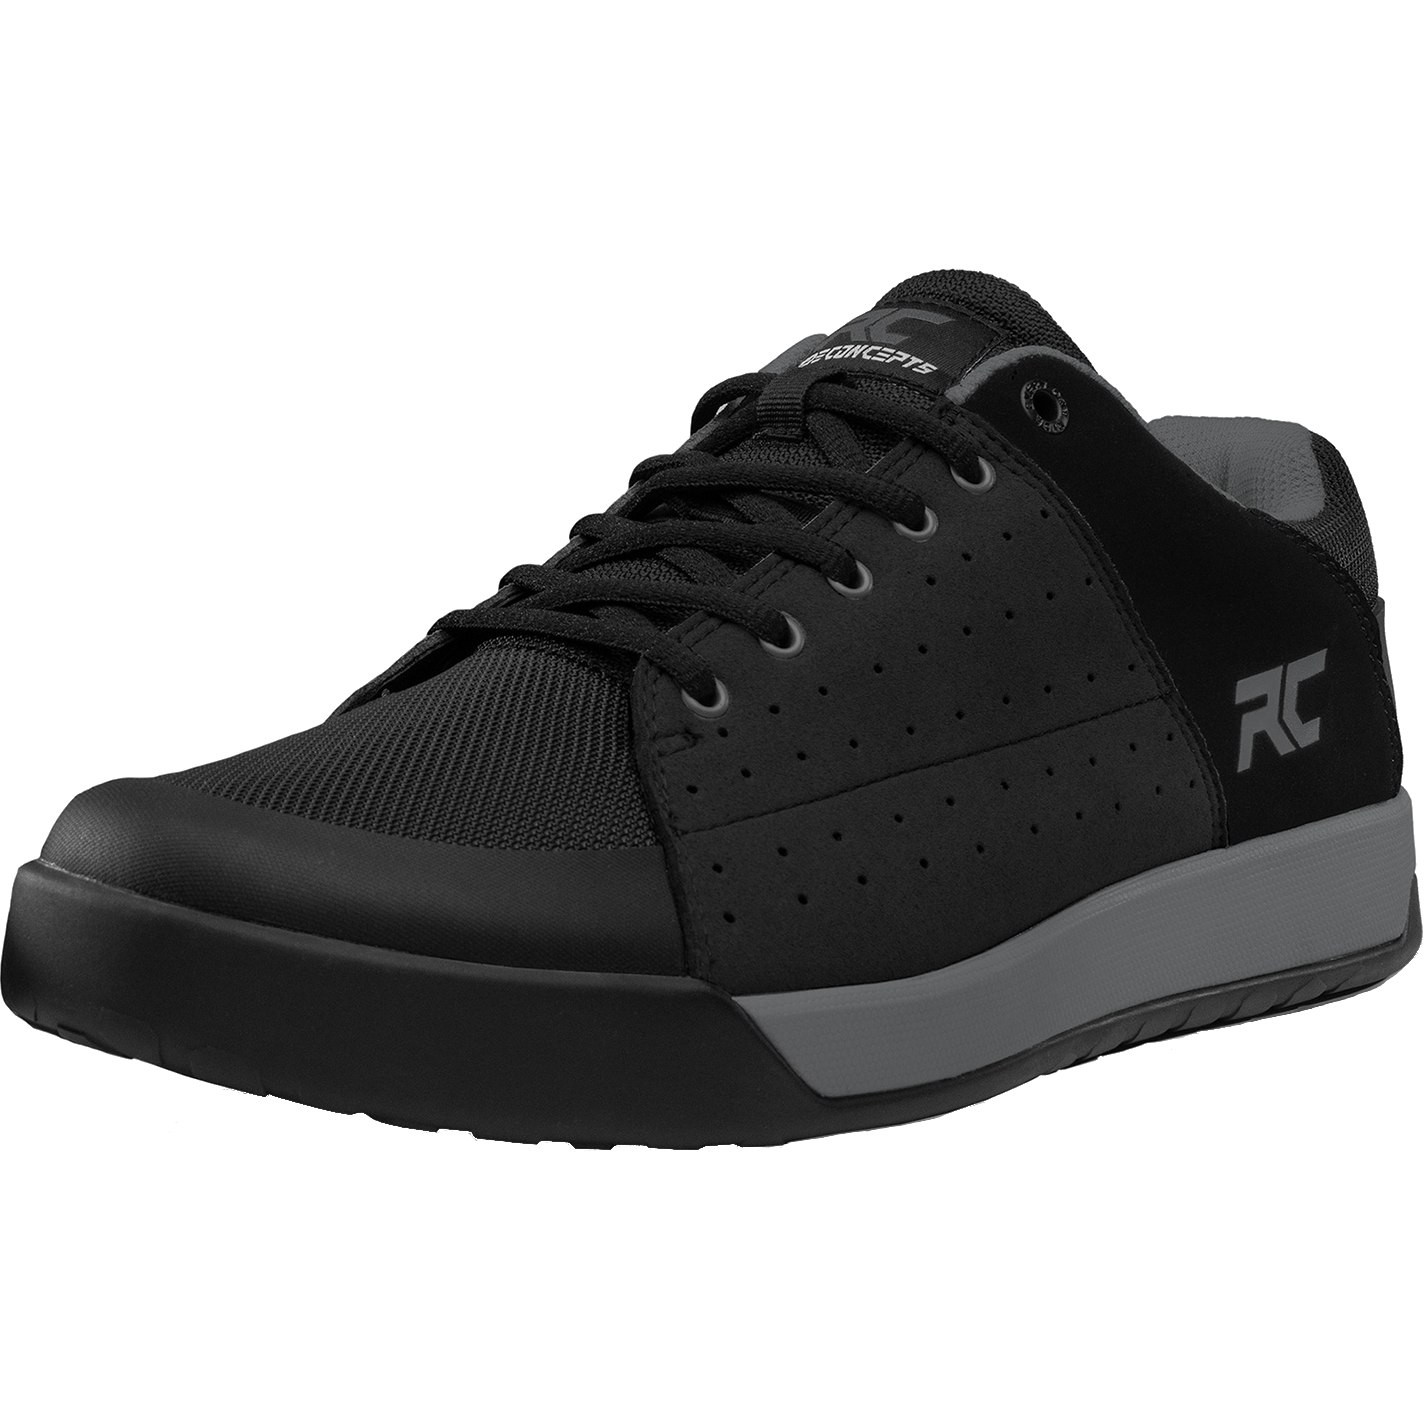 RIDE CONCEPTS Paire de Chaussures LIVEWIRE Black/Charcoal Size 45 (352242670)